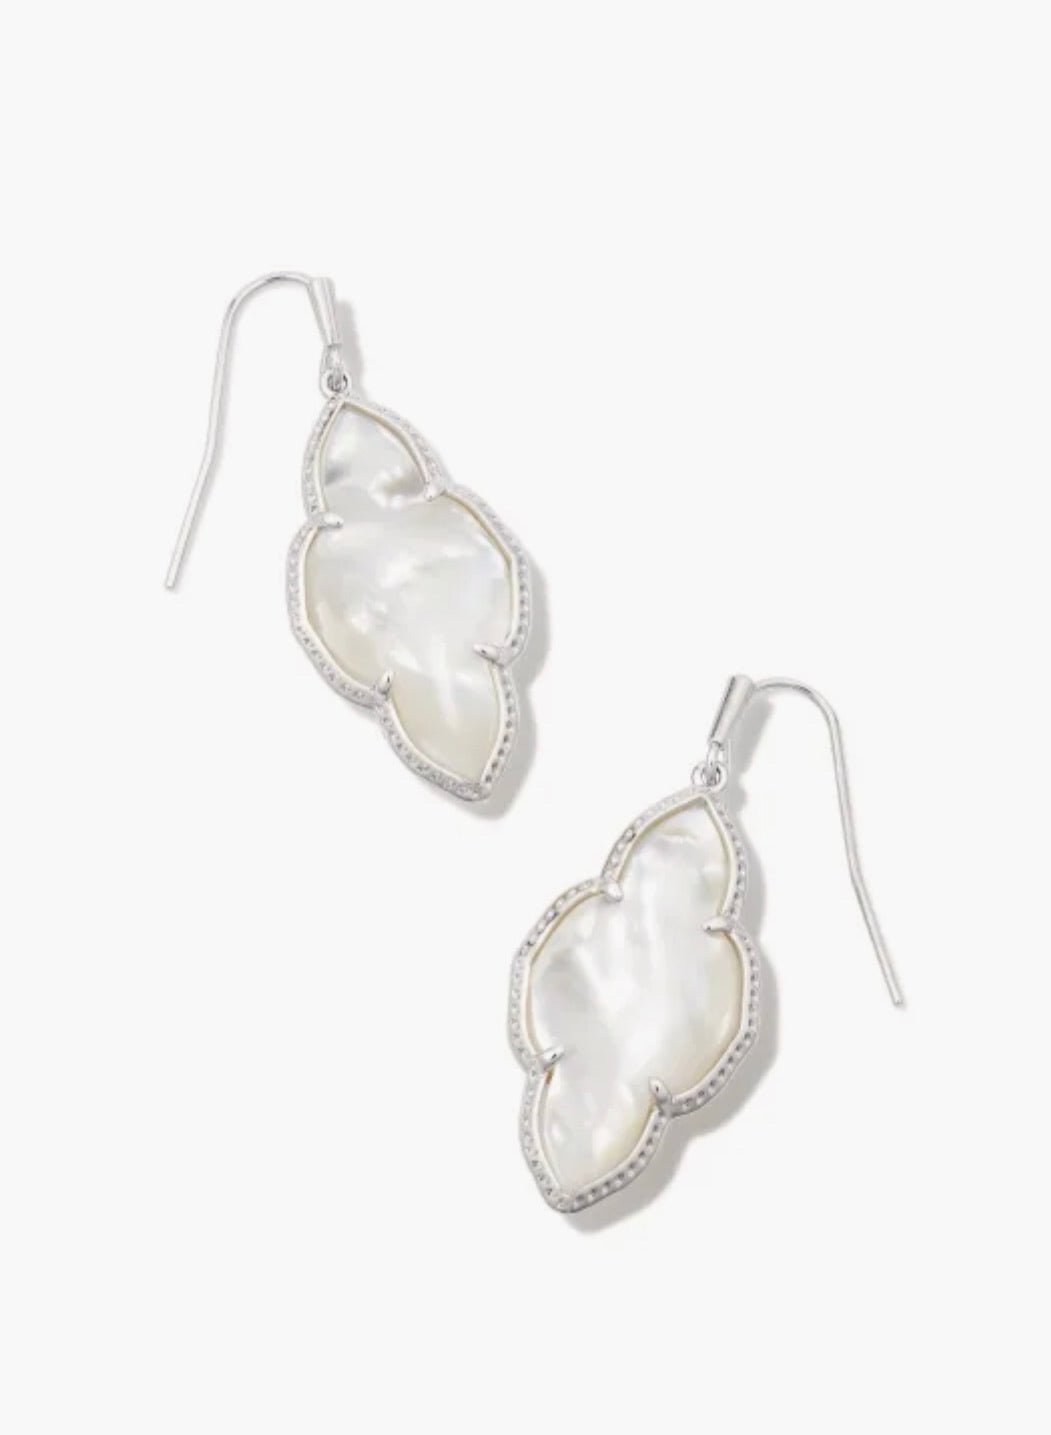 Kendra Scott-Abbie Silver Metal Drop Earrings in Ivory Mother-of-Pearl 9608855391